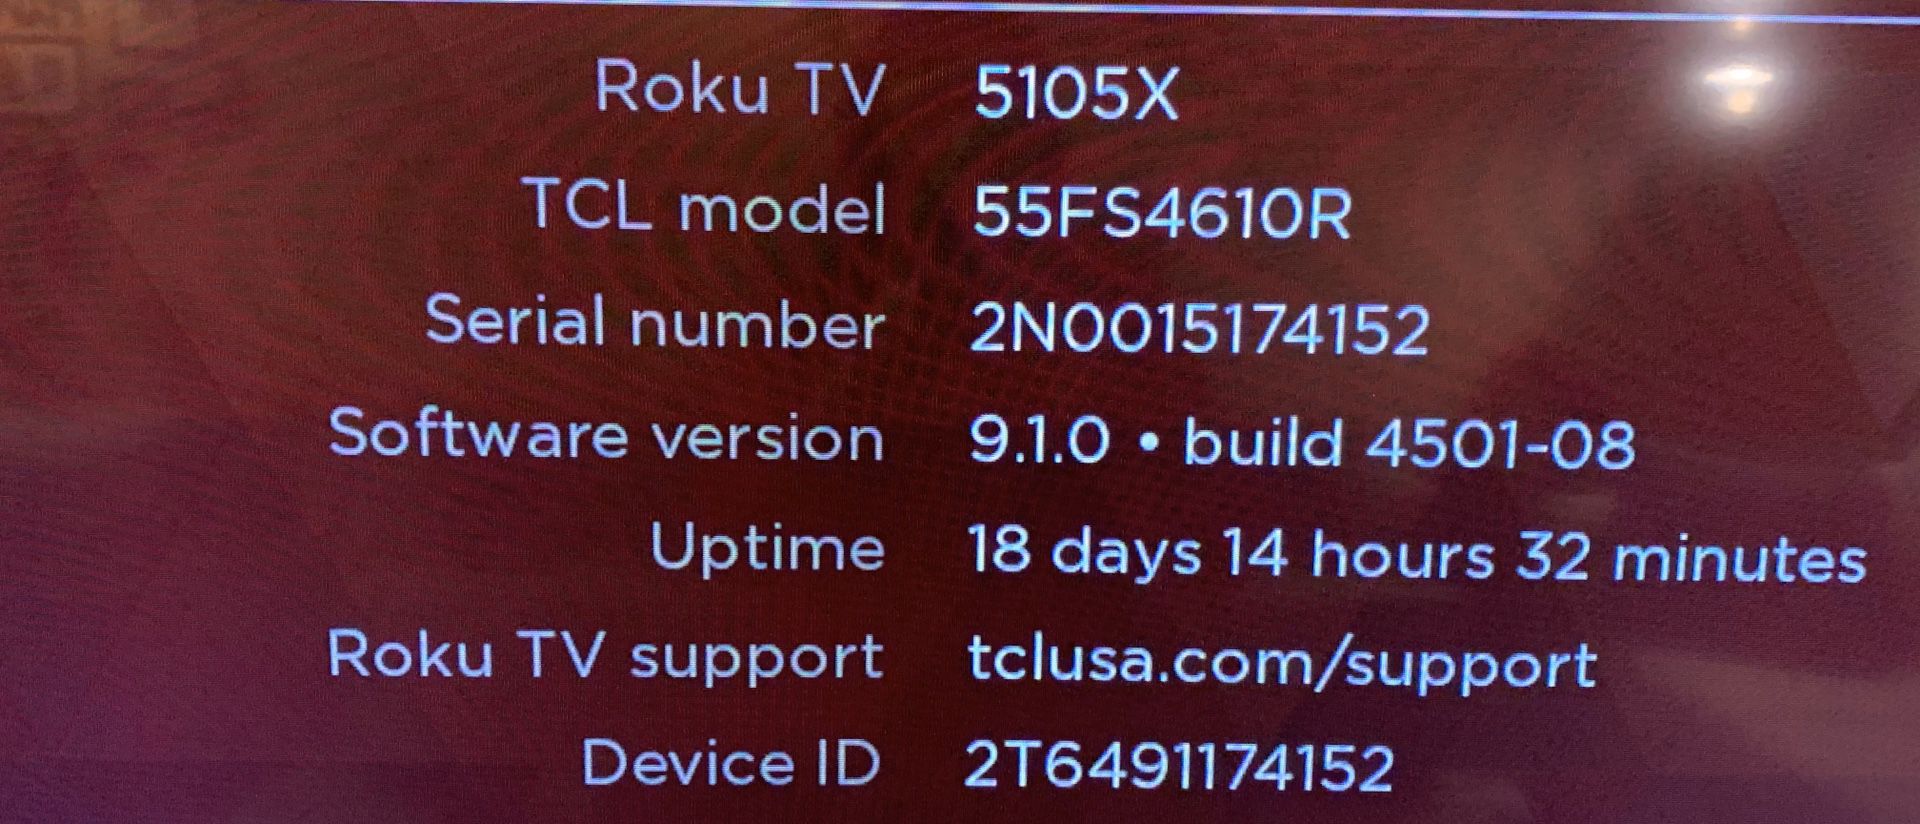 Smart TV - TCL Roku